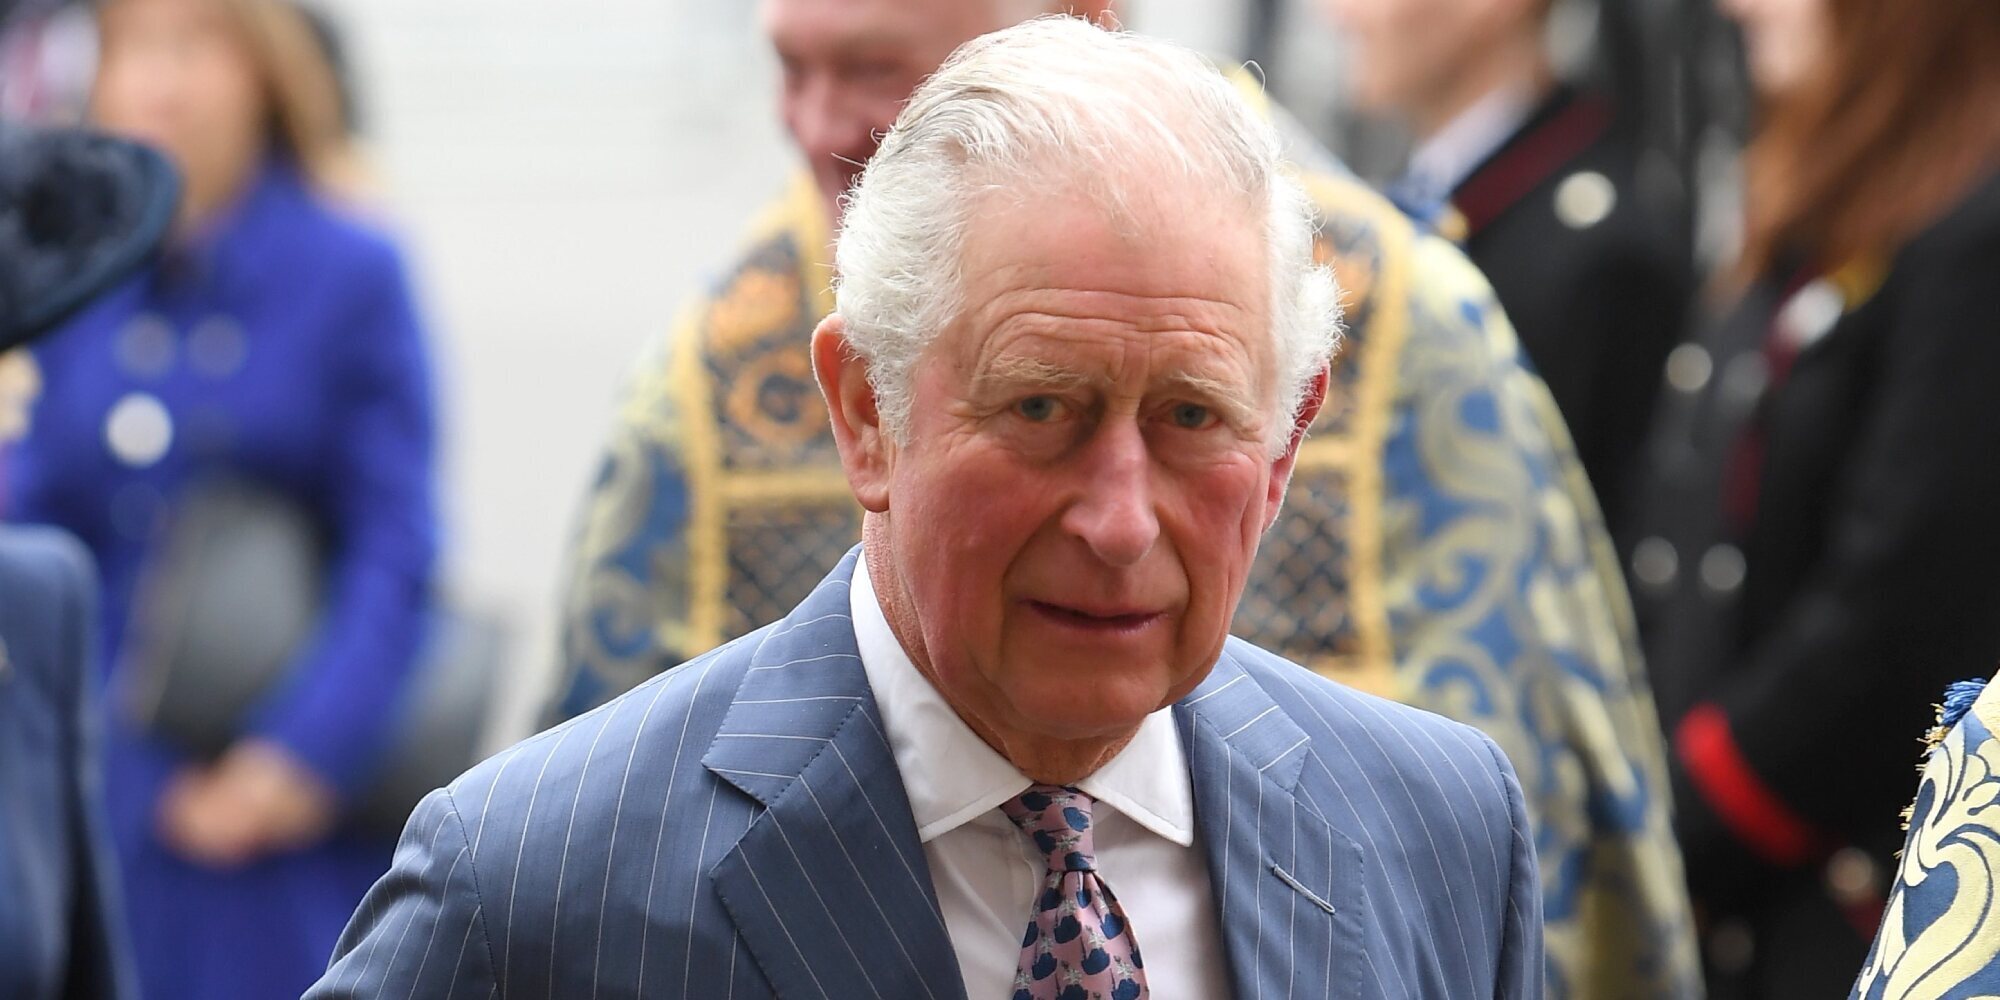 El Príncipe Carlos no quiere perder la relación con su hijo, el Príncipe Harry